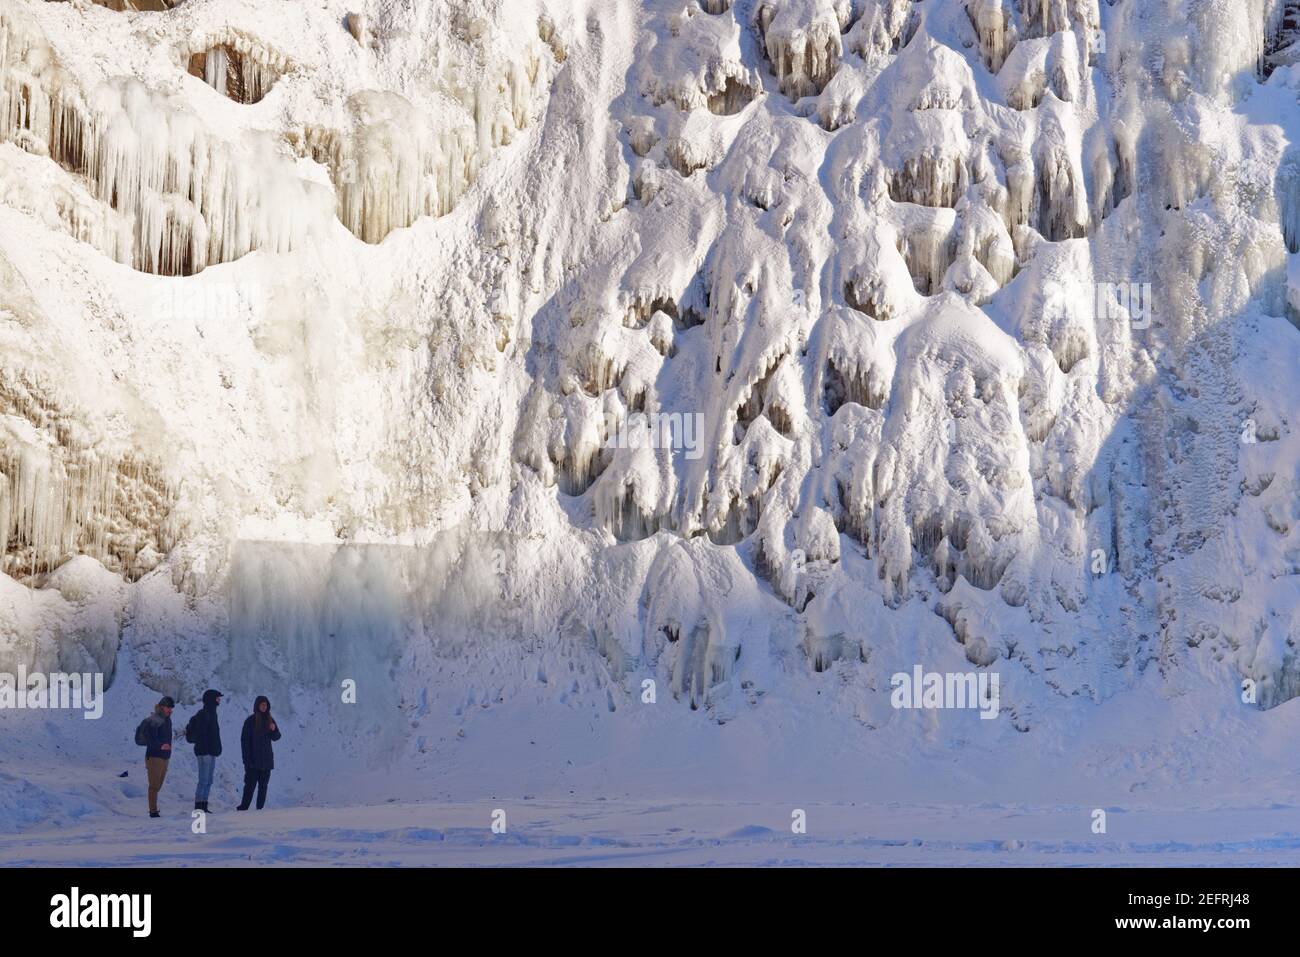 Un groupe de trois personnes au Frozen chutes de Chaudière à Charny, près de Québec, Canada Banque D'Images